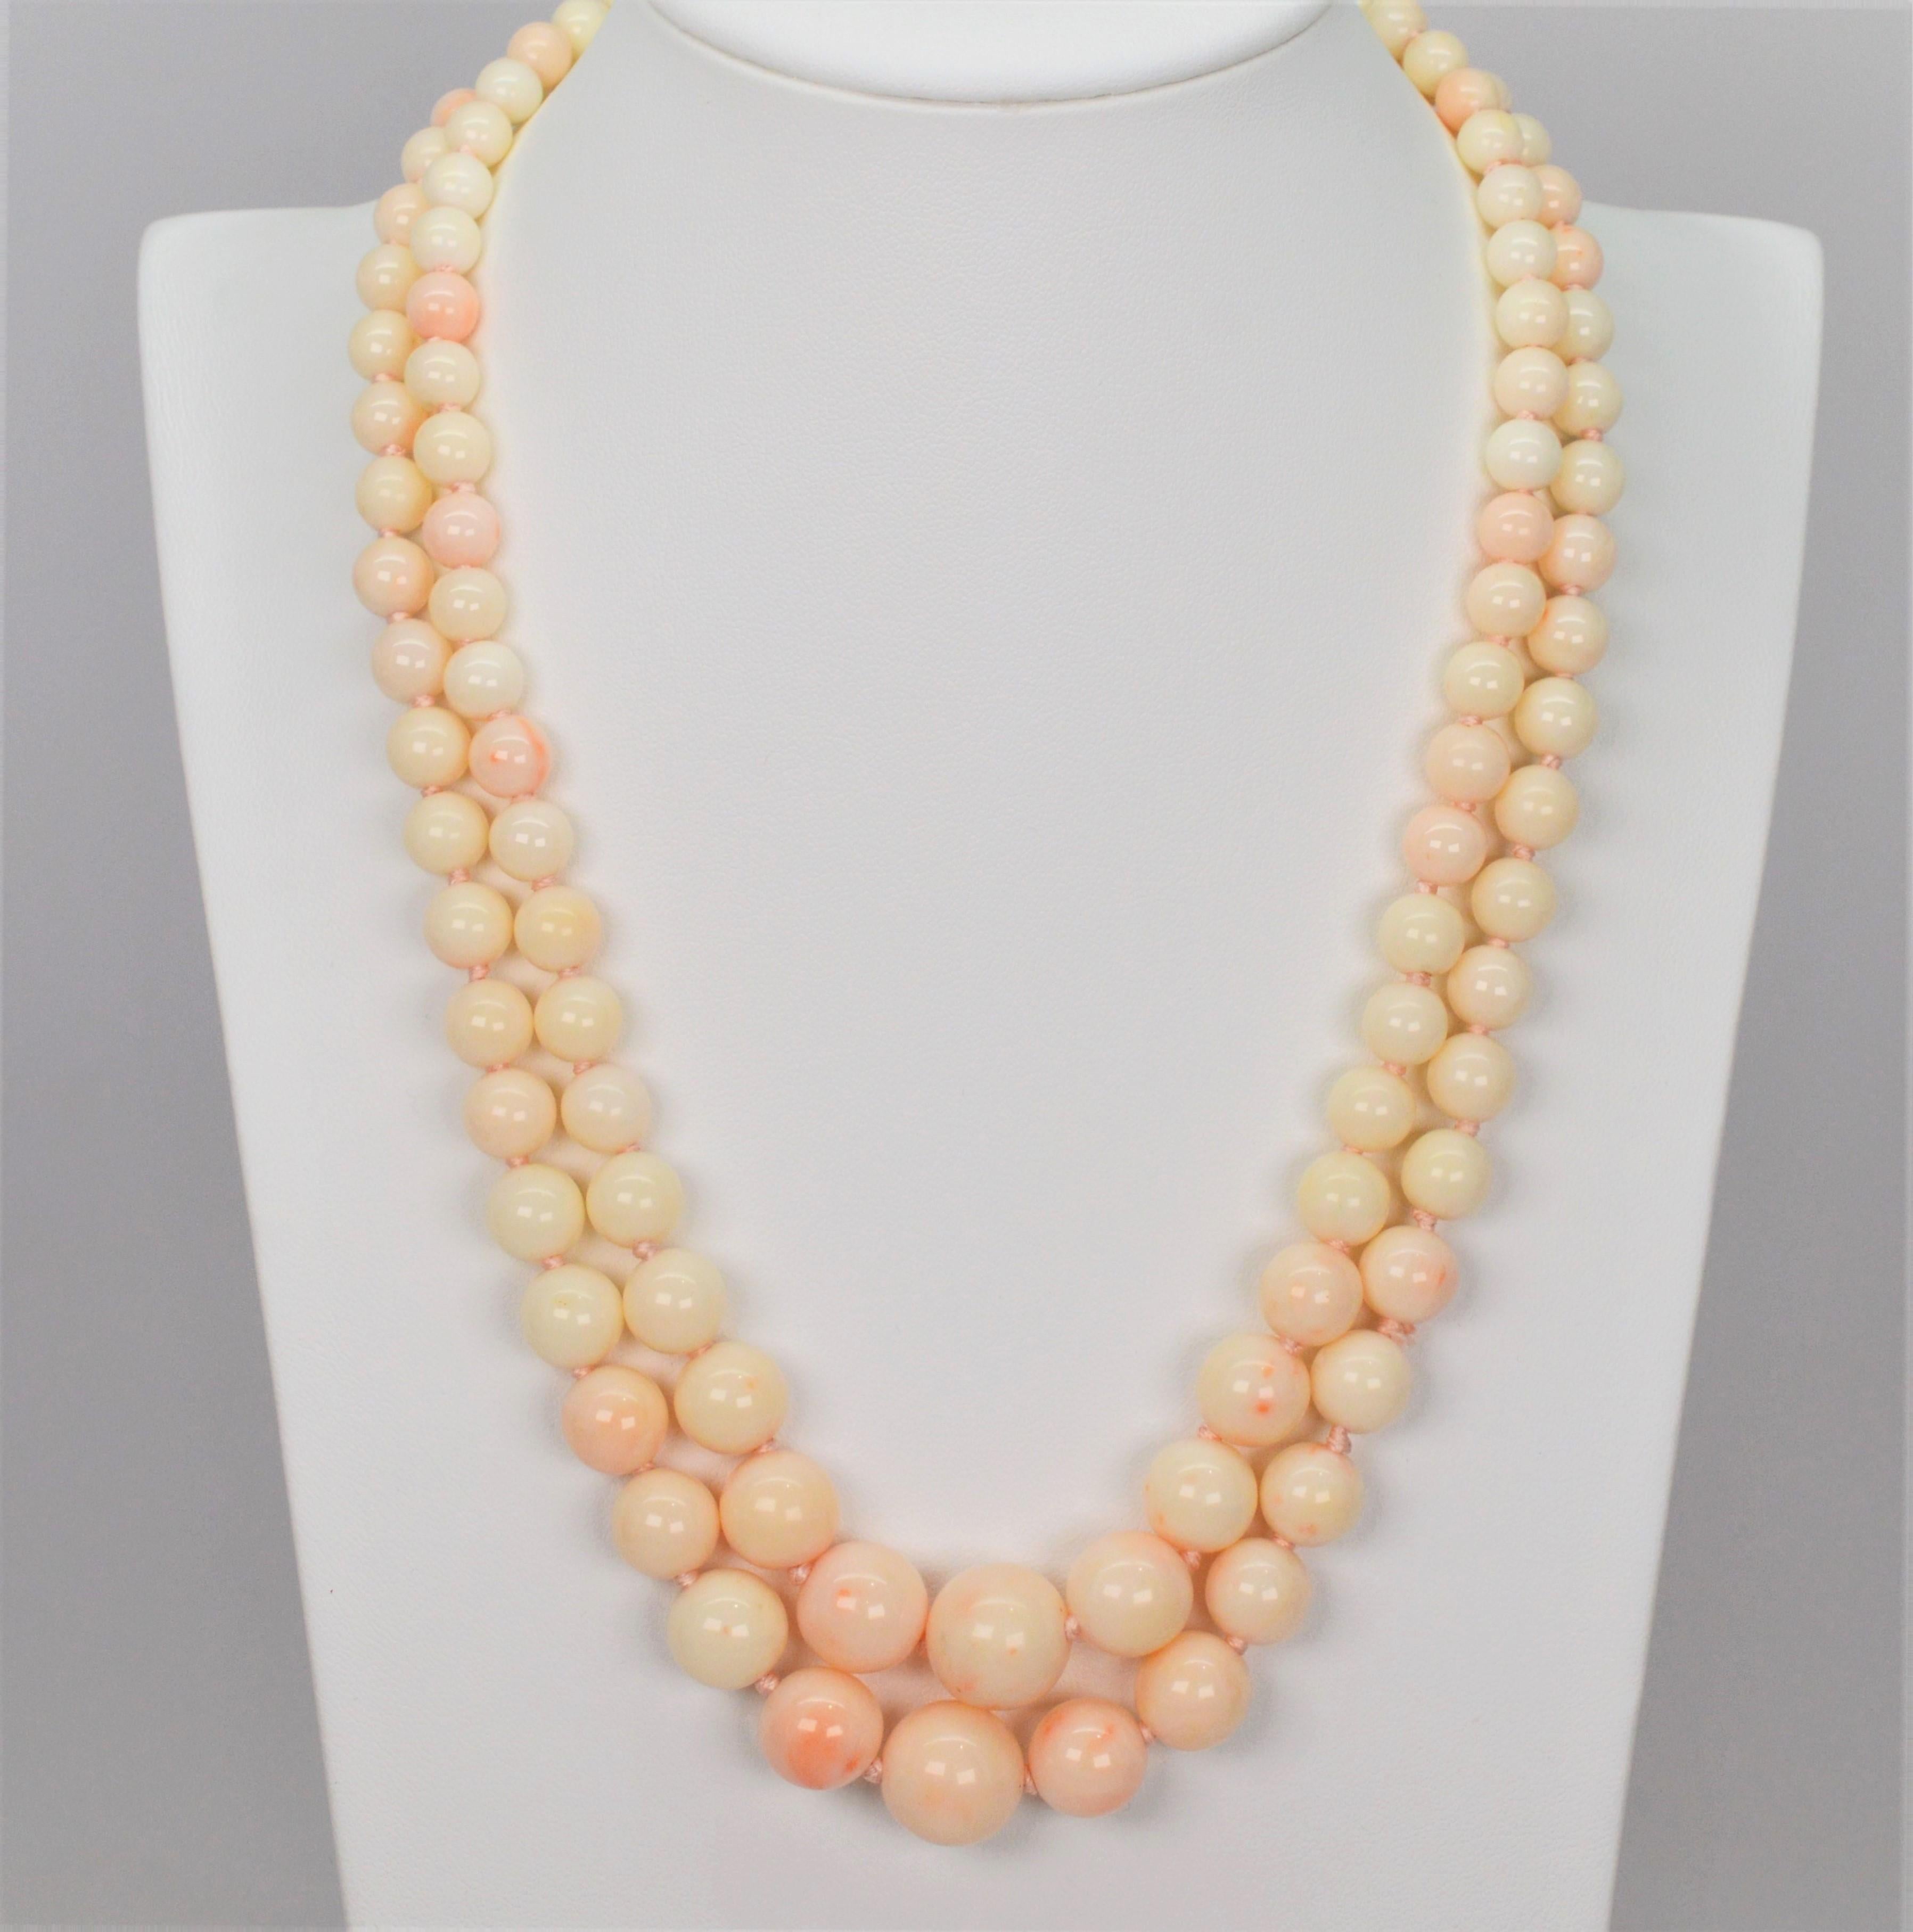 Plus d'une centaine de perles de corail naturel, avec de magnifiques tons roux, se drapent pour créer ce remarquable collier de perles à deux brins de 18 pouces.  Fraîchement rattachées avec de la soie et nouées à la main, les perles nouvellement